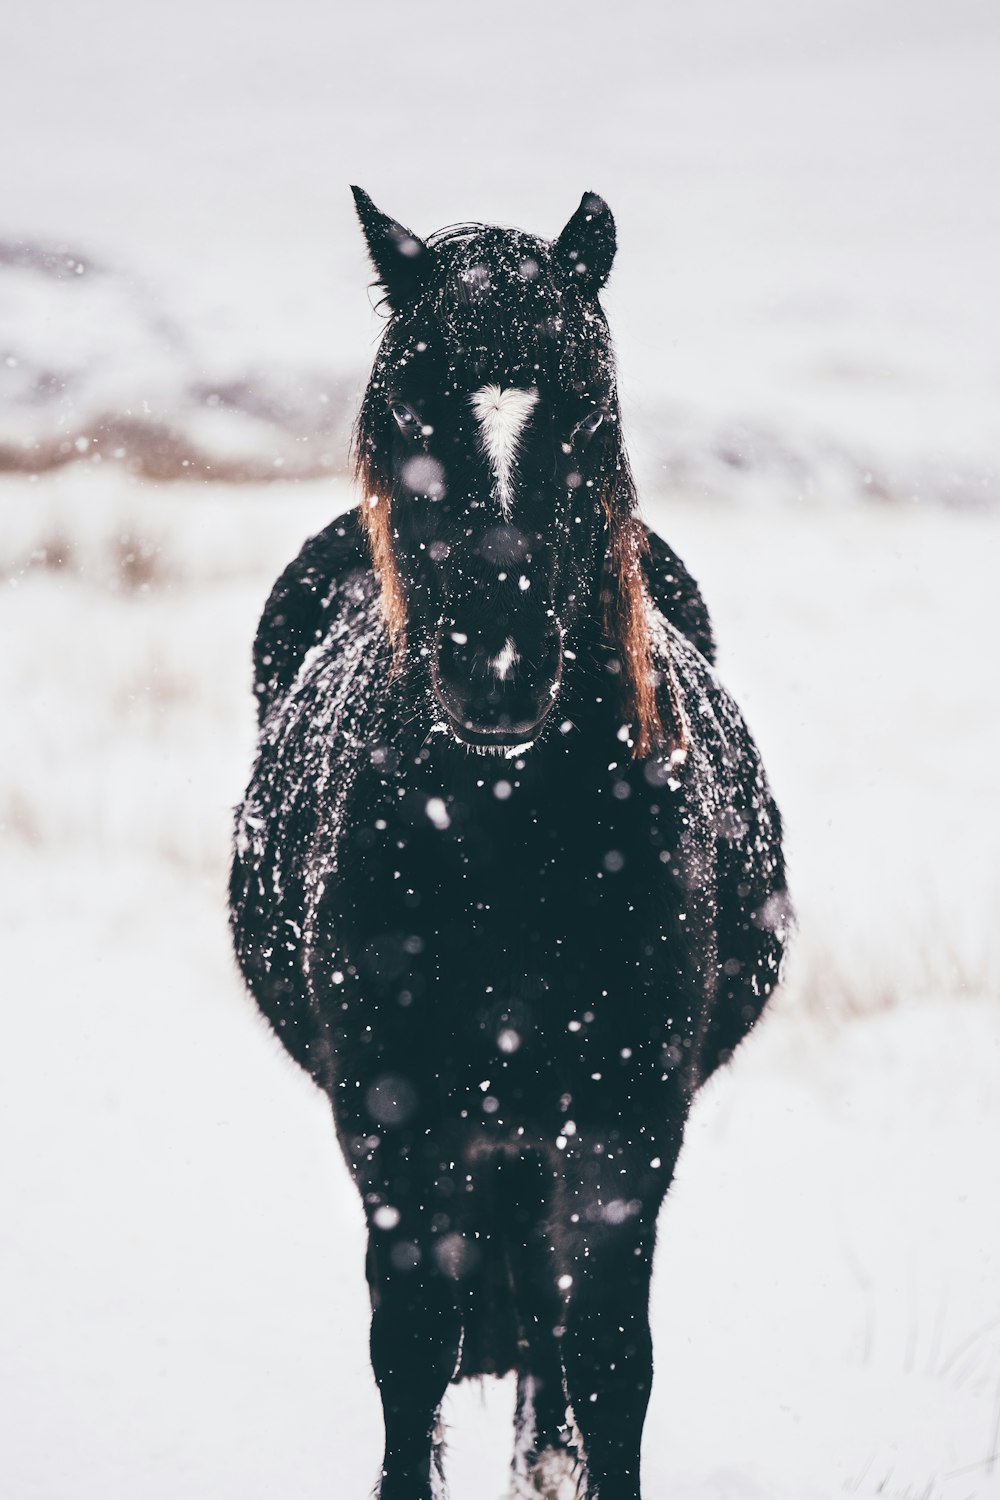 Fotografía de enfoque superficial de caballo negro parado en tierra nevada durante el día